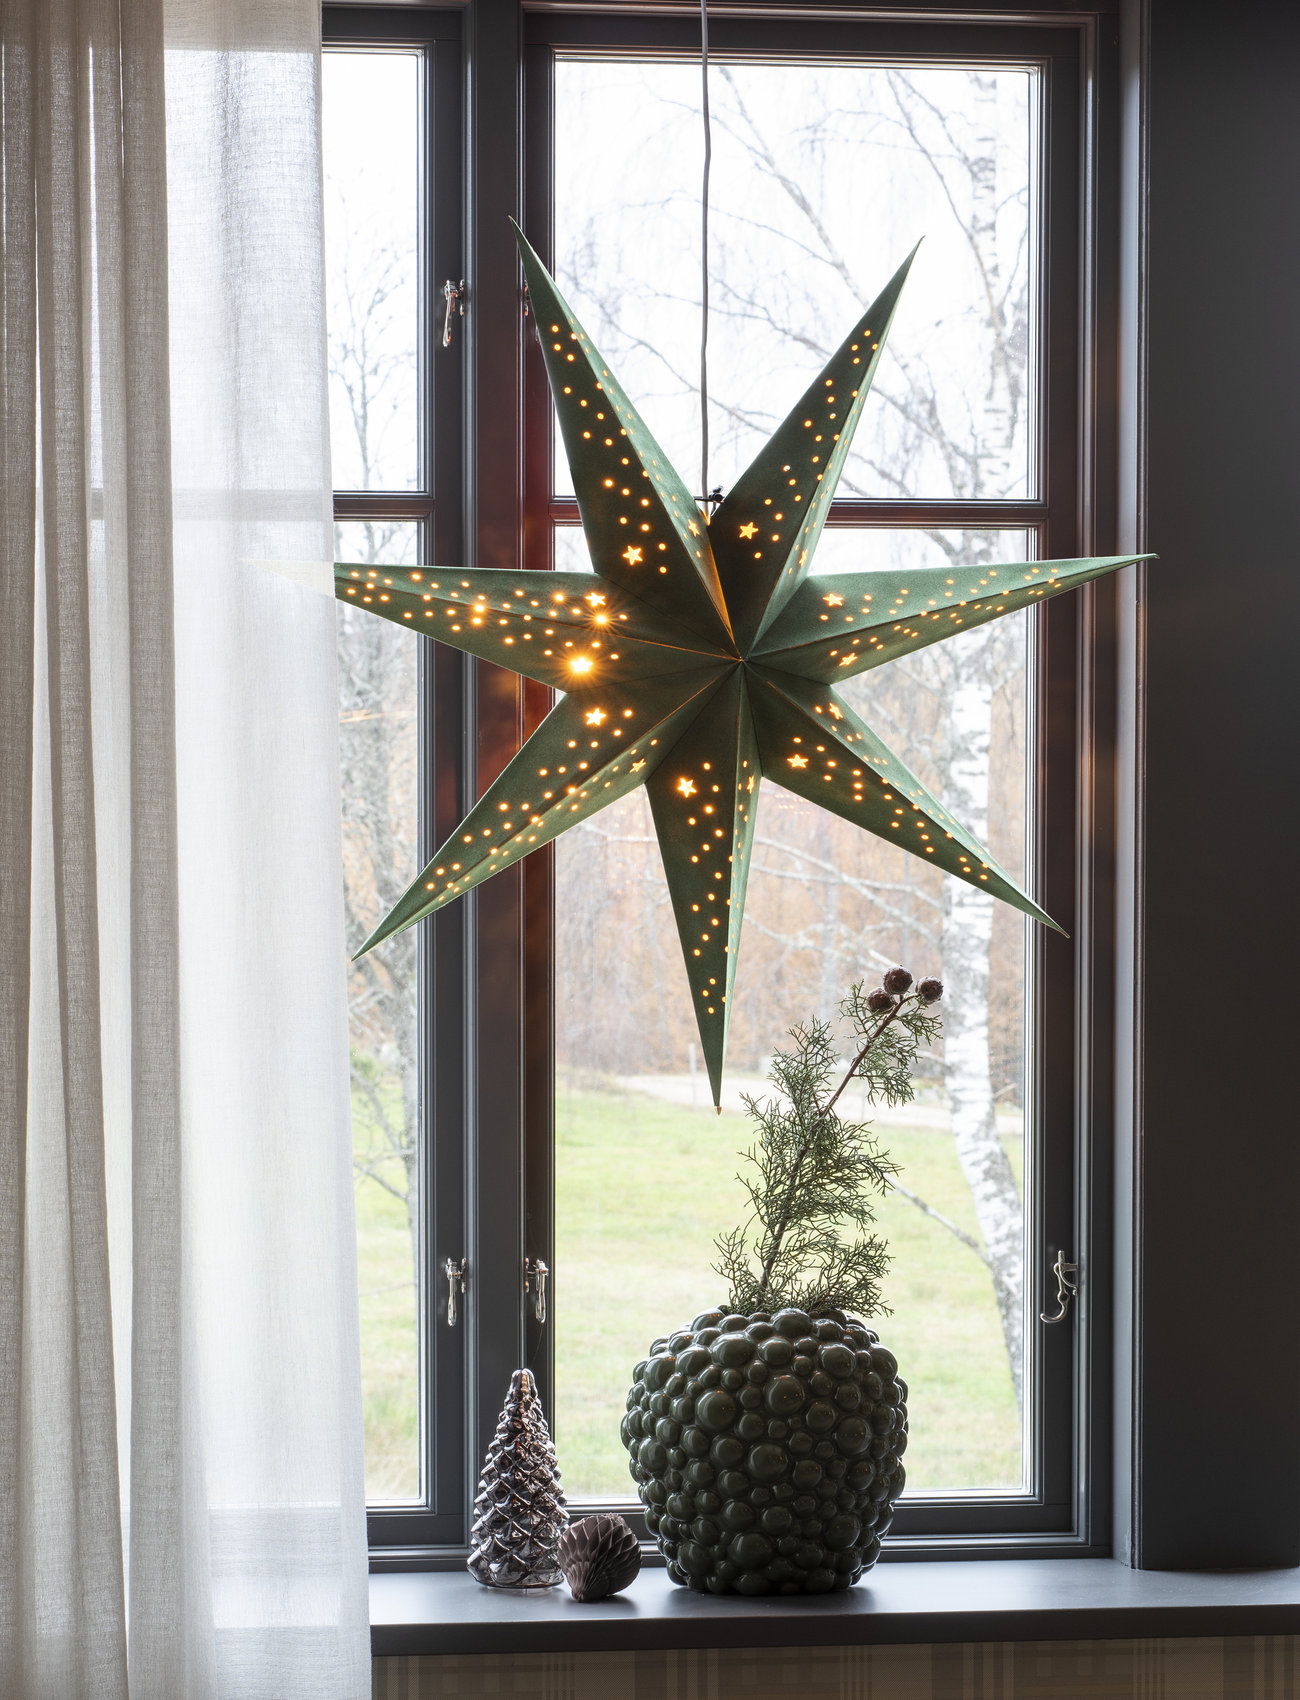 Konstsmide - Paper star velvet 78cm 7points - lowest prices - green - 1